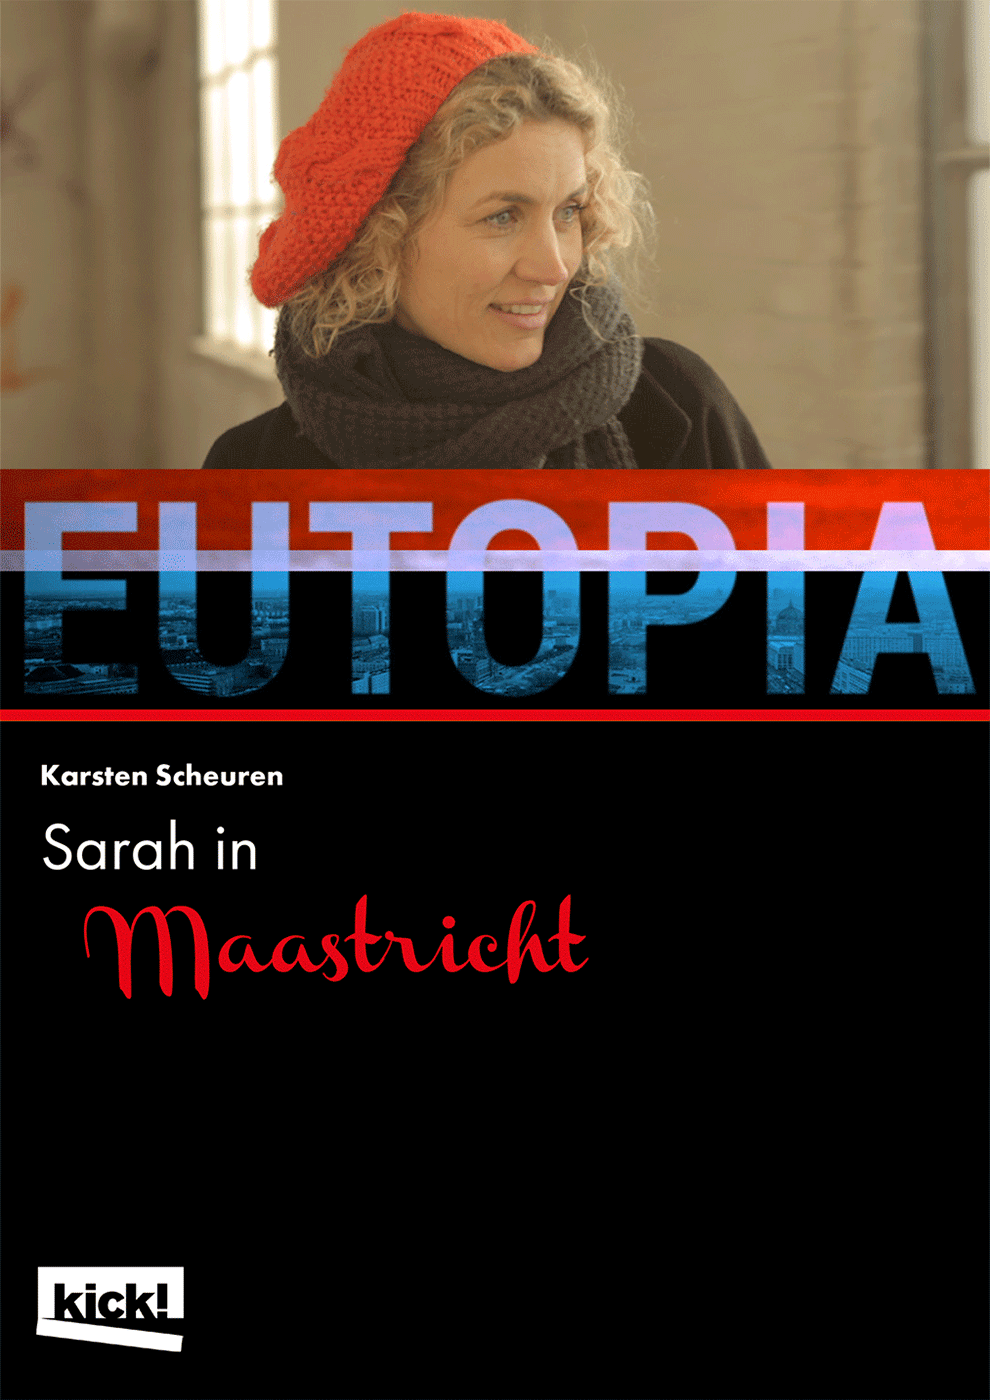 EUTOPIA - Sarah in Maastricht Ein Film von Karsten Scheuren